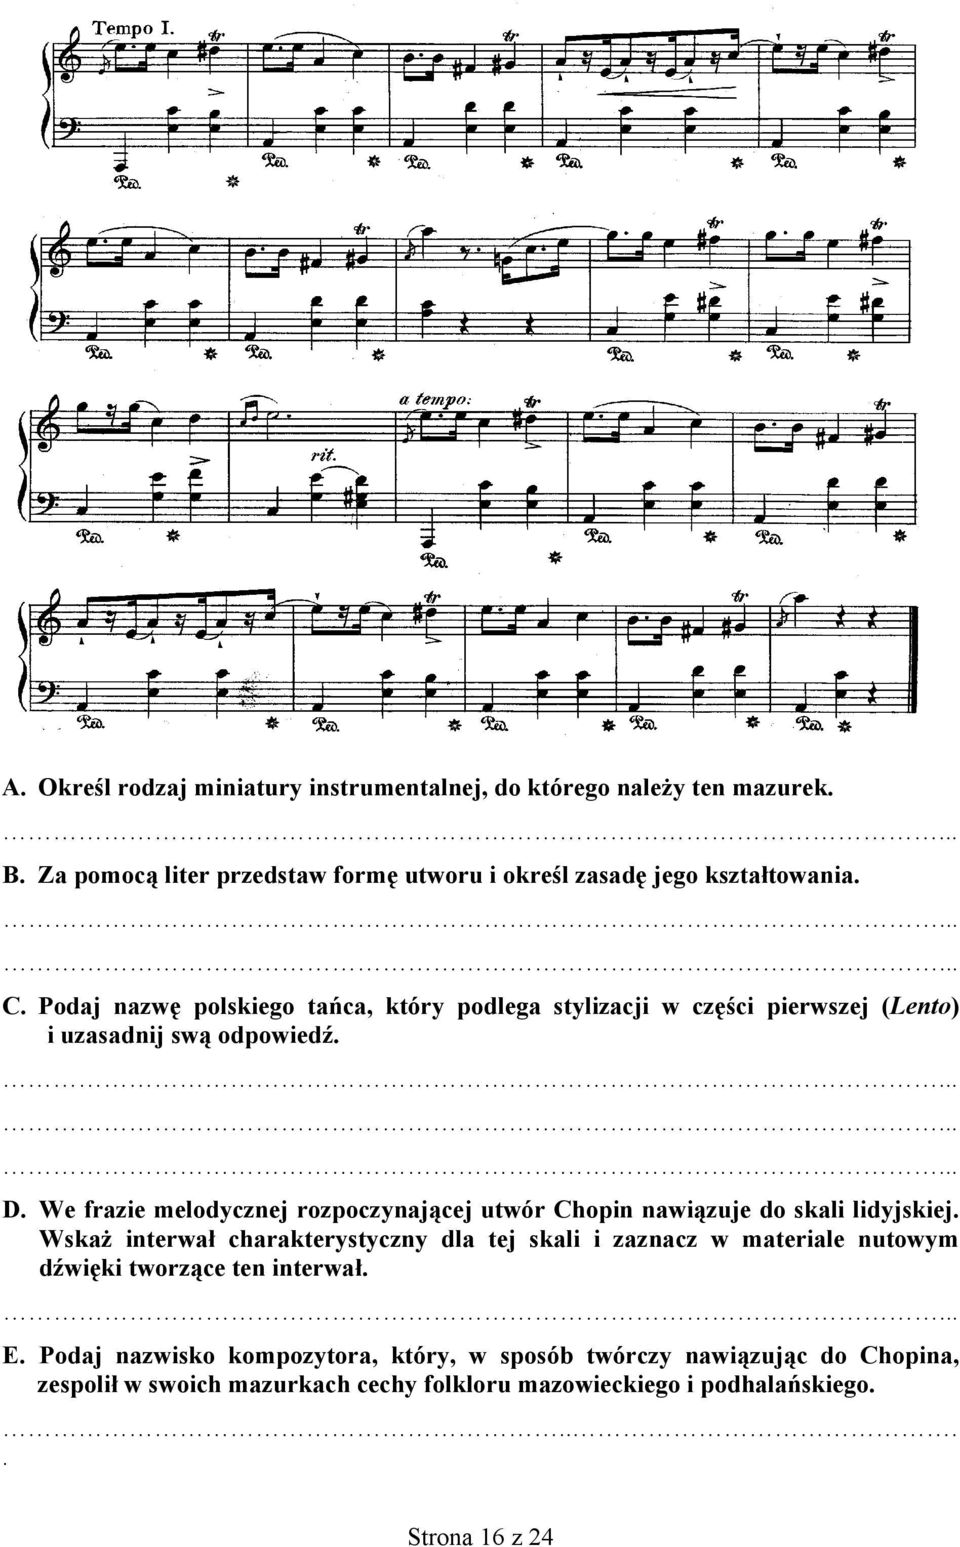 We frazie melodycznej rozpoczynającej utwór Chopin nawiązuje do skali lidyjskiej.